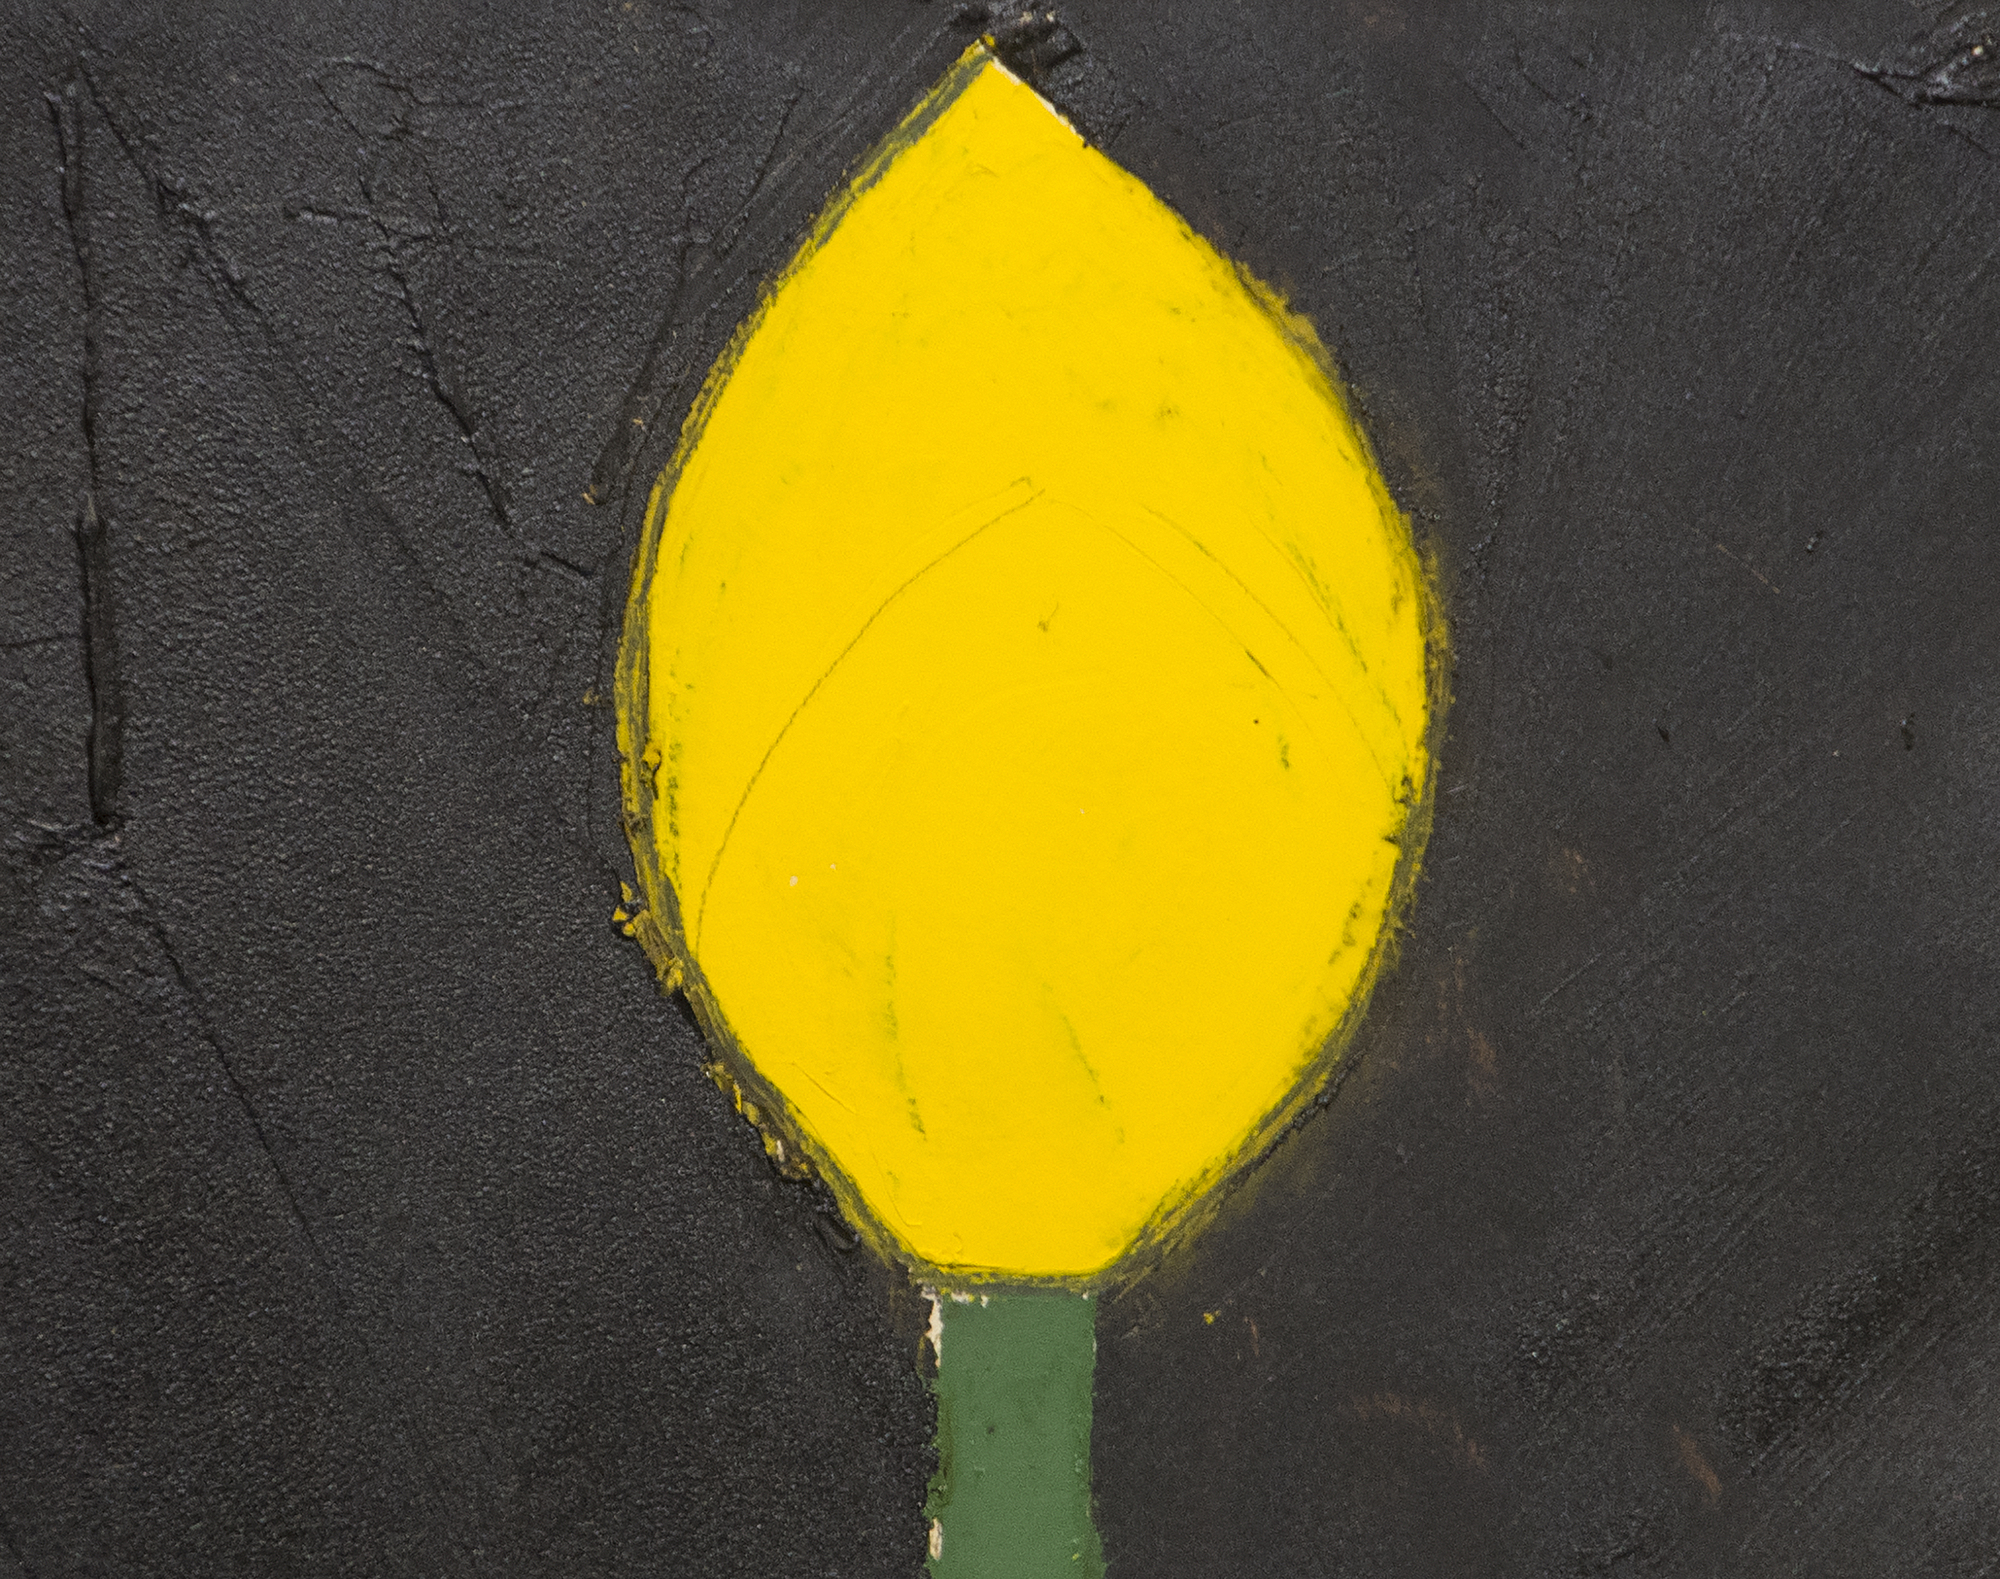 دونالد سلطان - الزنبق الأصفر رقم 18 - الزيت والقطران على الورق - 20 × 20 بوصة.